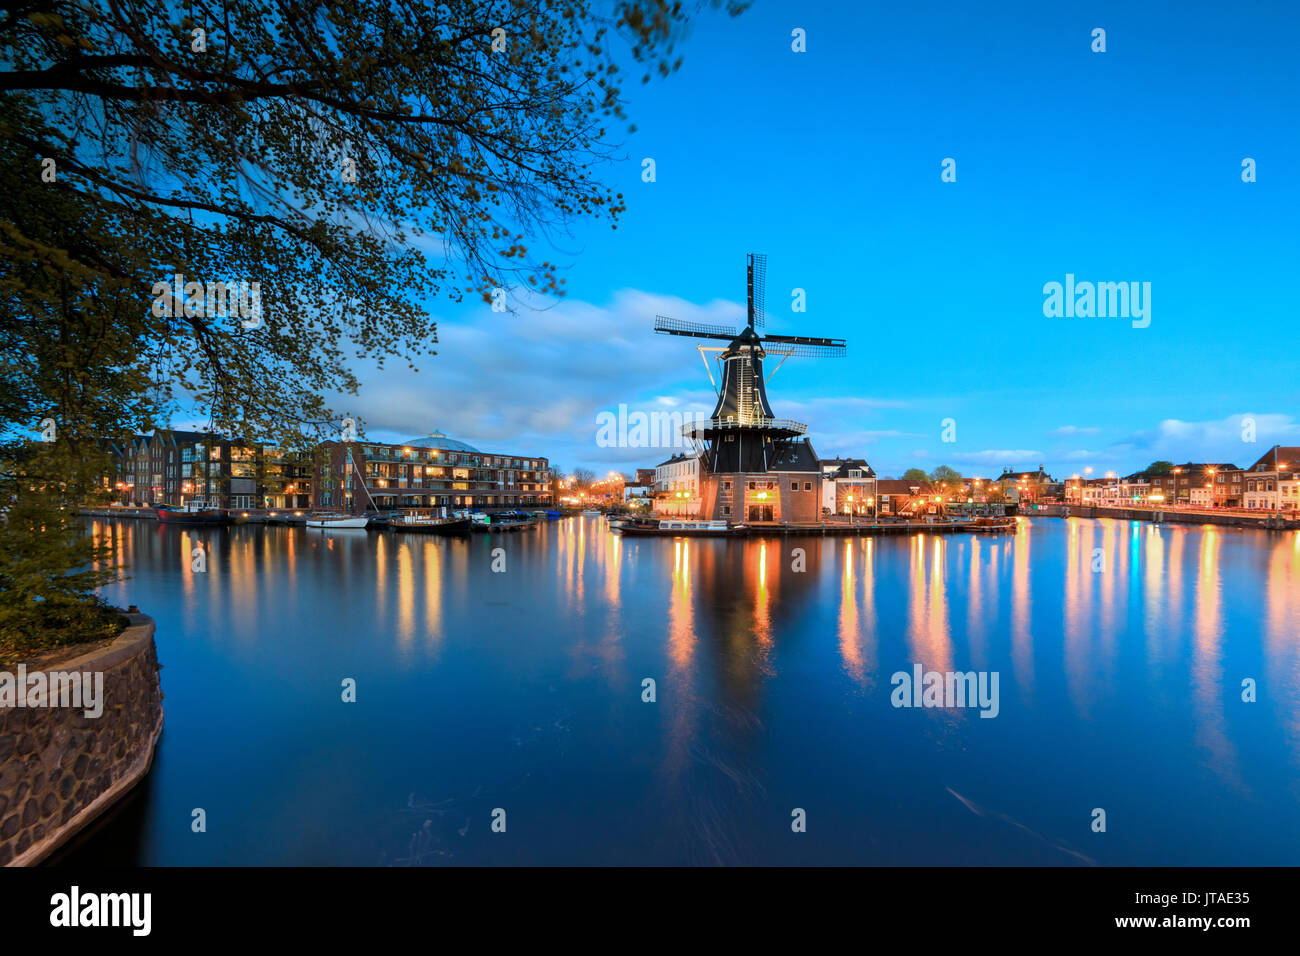 La tombée de voyants sur le Moulin de Adriaan reflétée dans la rivière Spaarne, Haarlem, Hollande du Nord, les Pays-Bas, Europe Banque D'Images